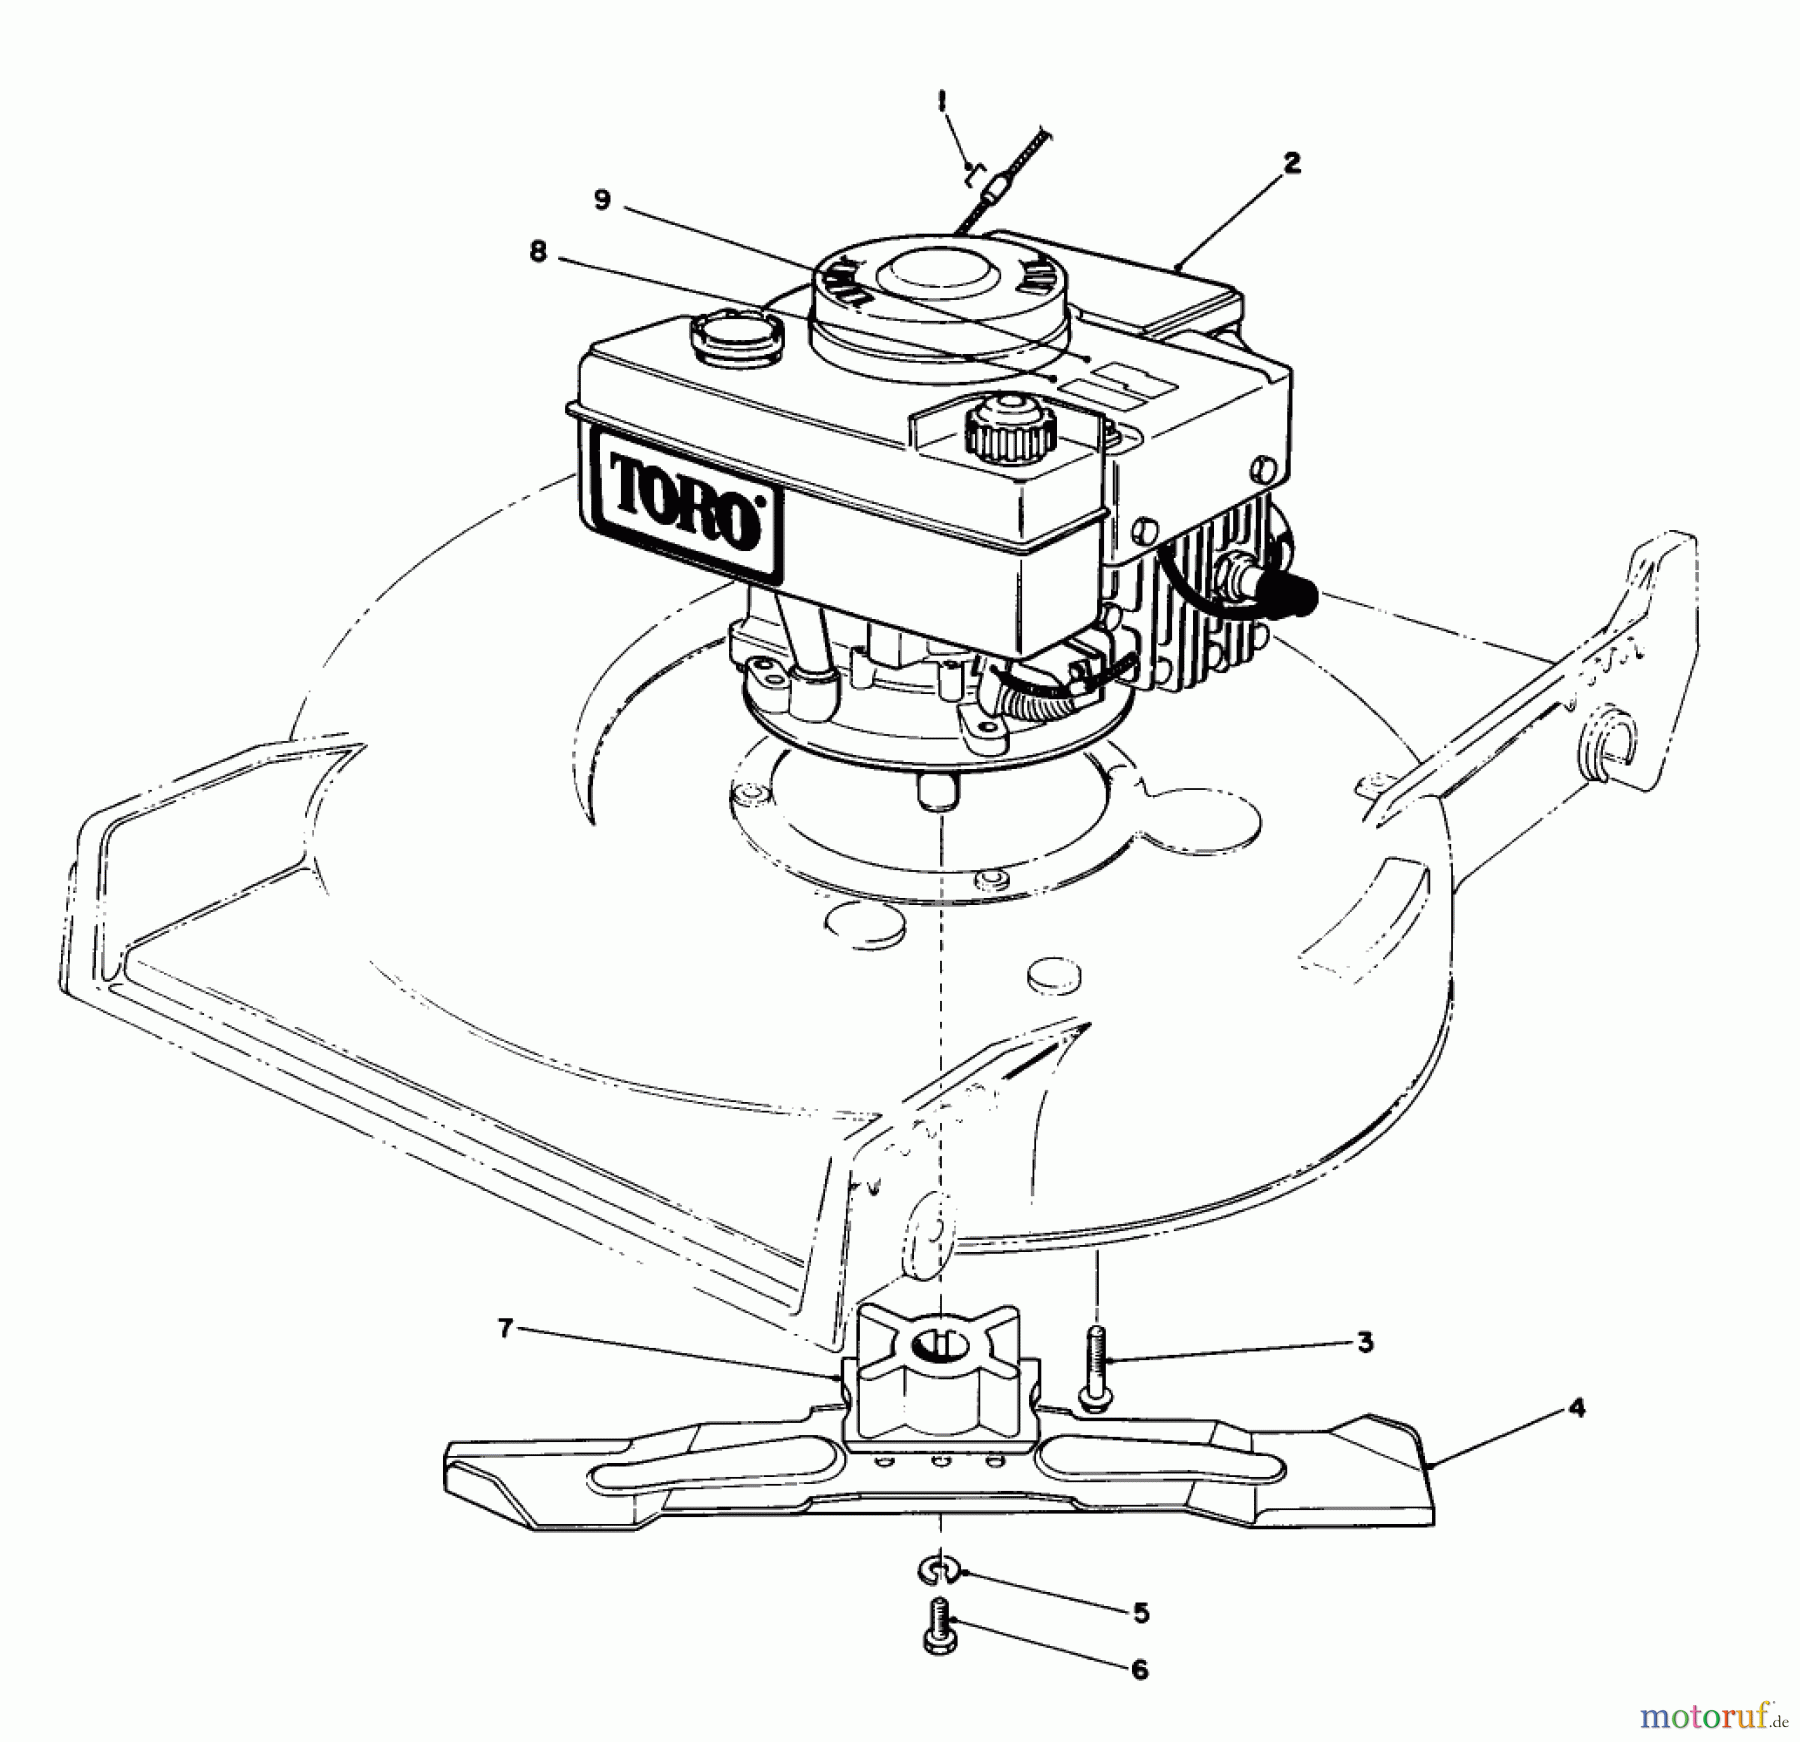  Toro Neu Mowers, Walk-Behind Seite 1 20531 - Toro Lawnmower, 1988 (8000001-8999999) ENGINE ASSEMBLY